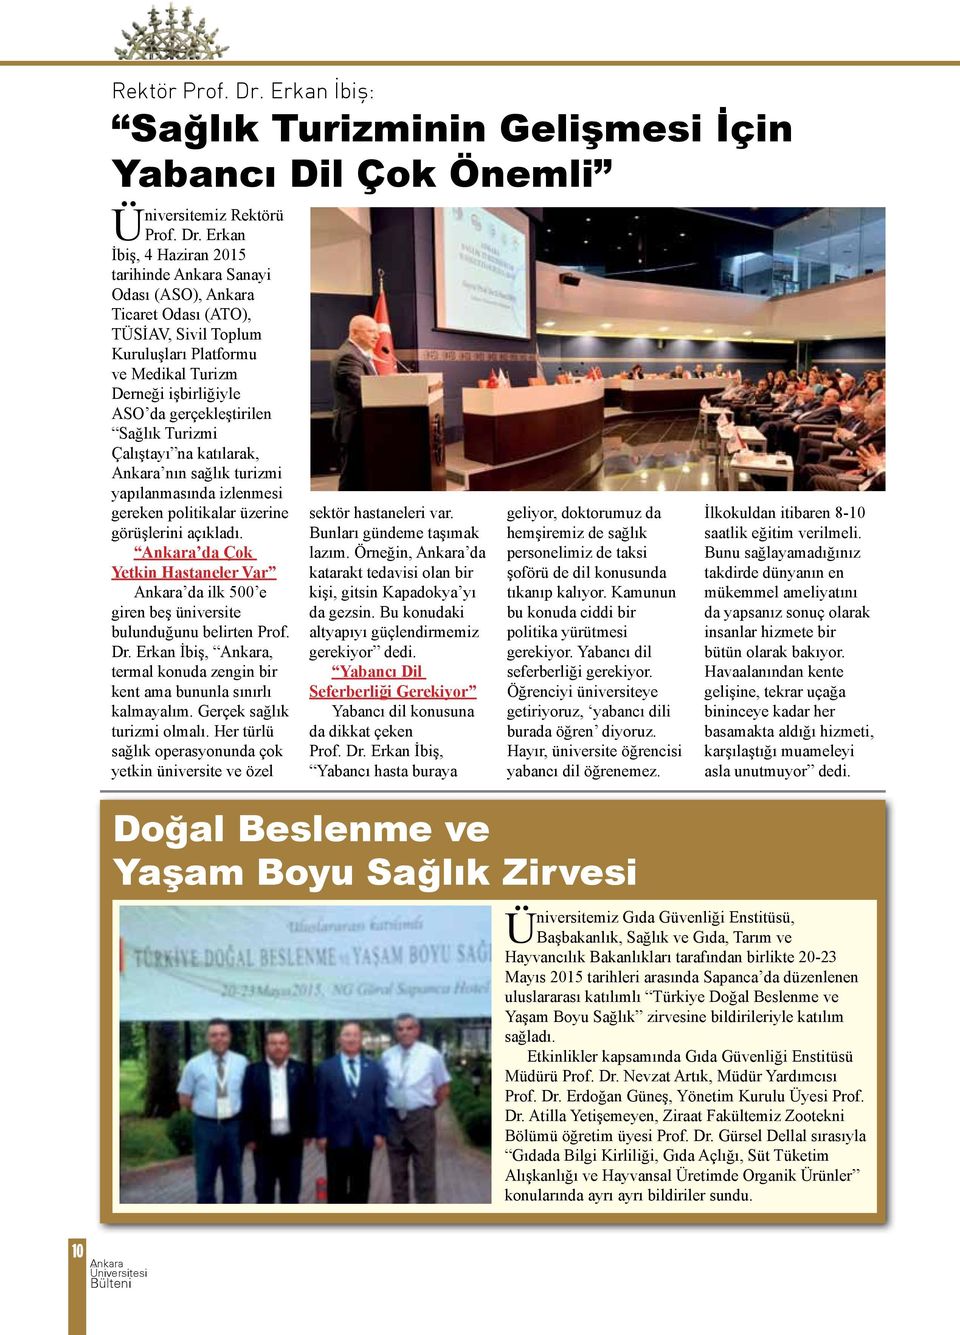 Erkan İbiş, 4 Haziran 2015 tarihinde Sanayi Odası (ASO), Ticaret Odası (ATO), TÜSİAV, Sivil Toplum Kuruluşları Platformu ve Medikal Turizm Derneği işbirliğiyle ASO da gerçekleştirilen Sağlık Turizmi